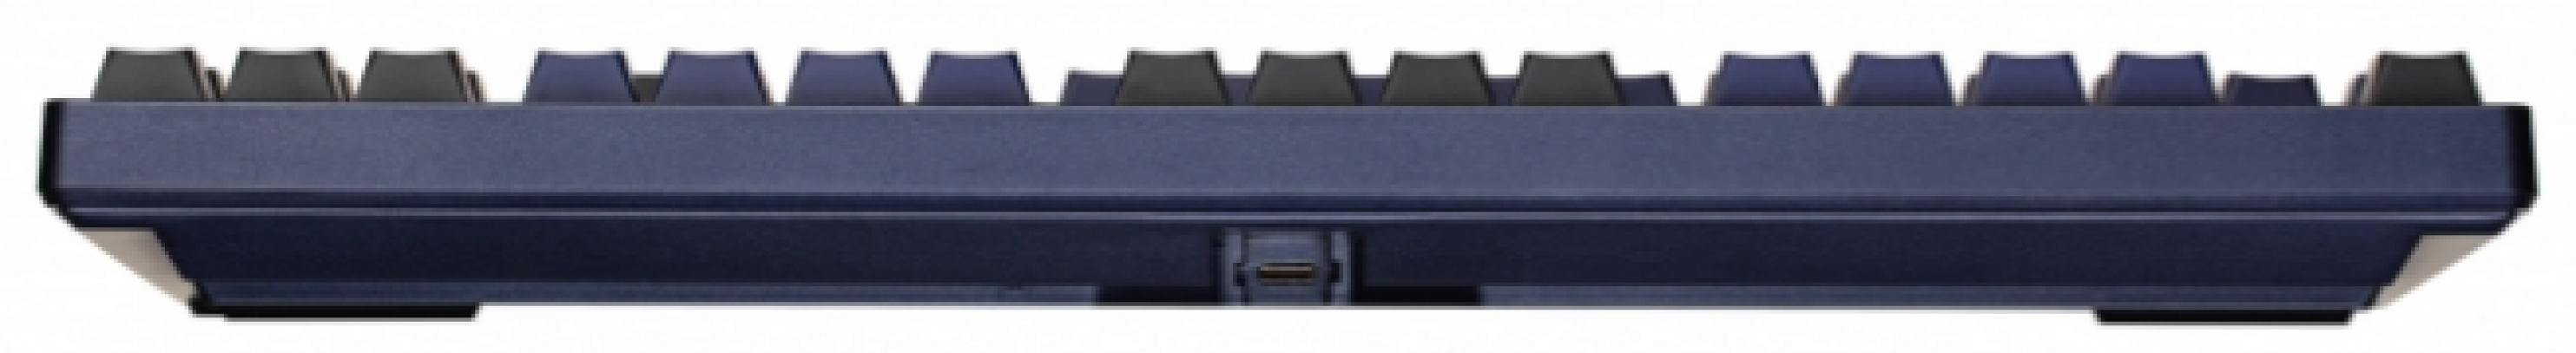 Клавиатура игровая Akko 3087 Horizon DS Cherry MX Silent Red RU Blue/Black